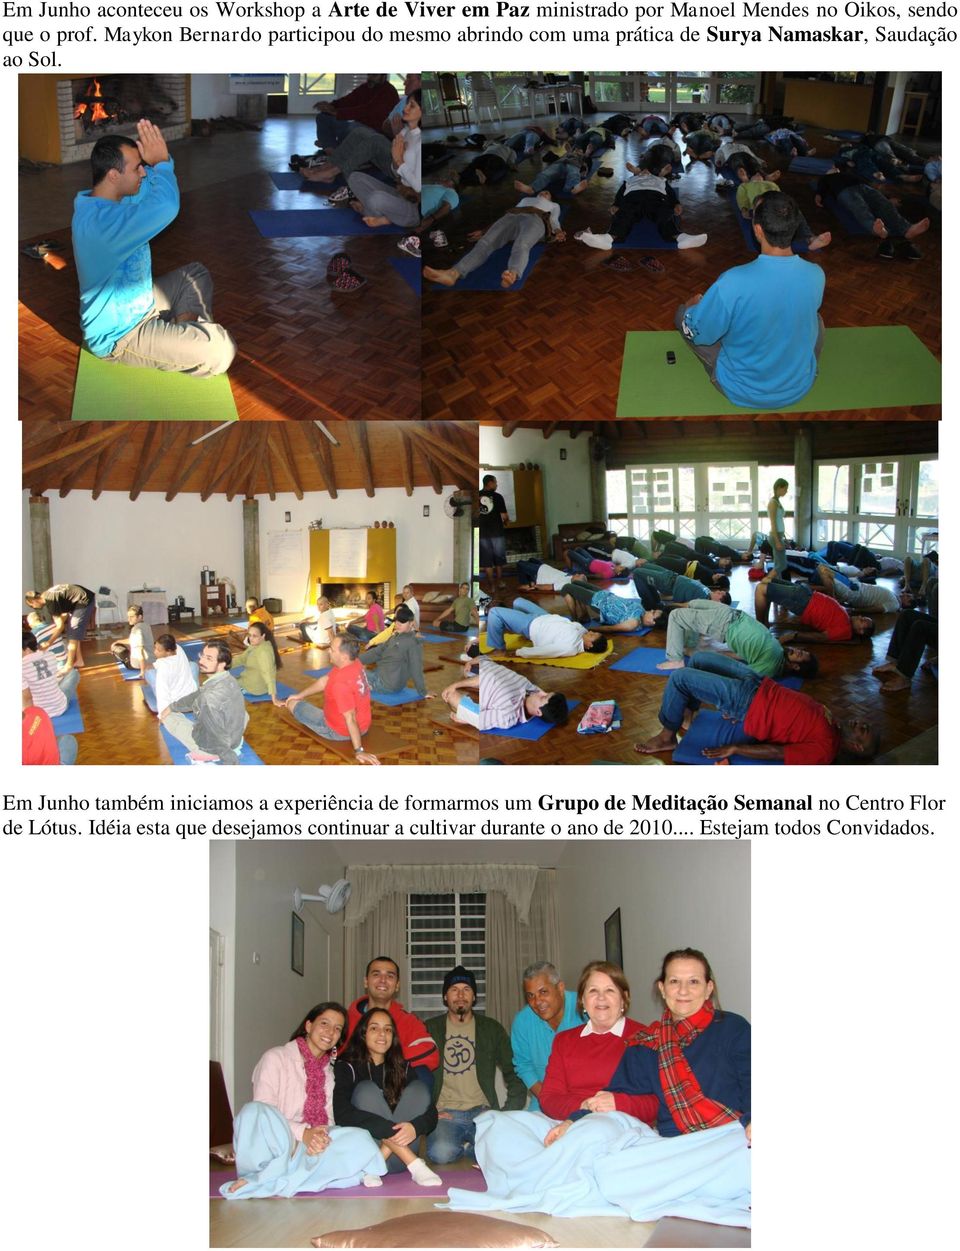 Em Junho também iniciamos a experiência de formarmos um Grupo de Meditação Semanal no Centro Flor de